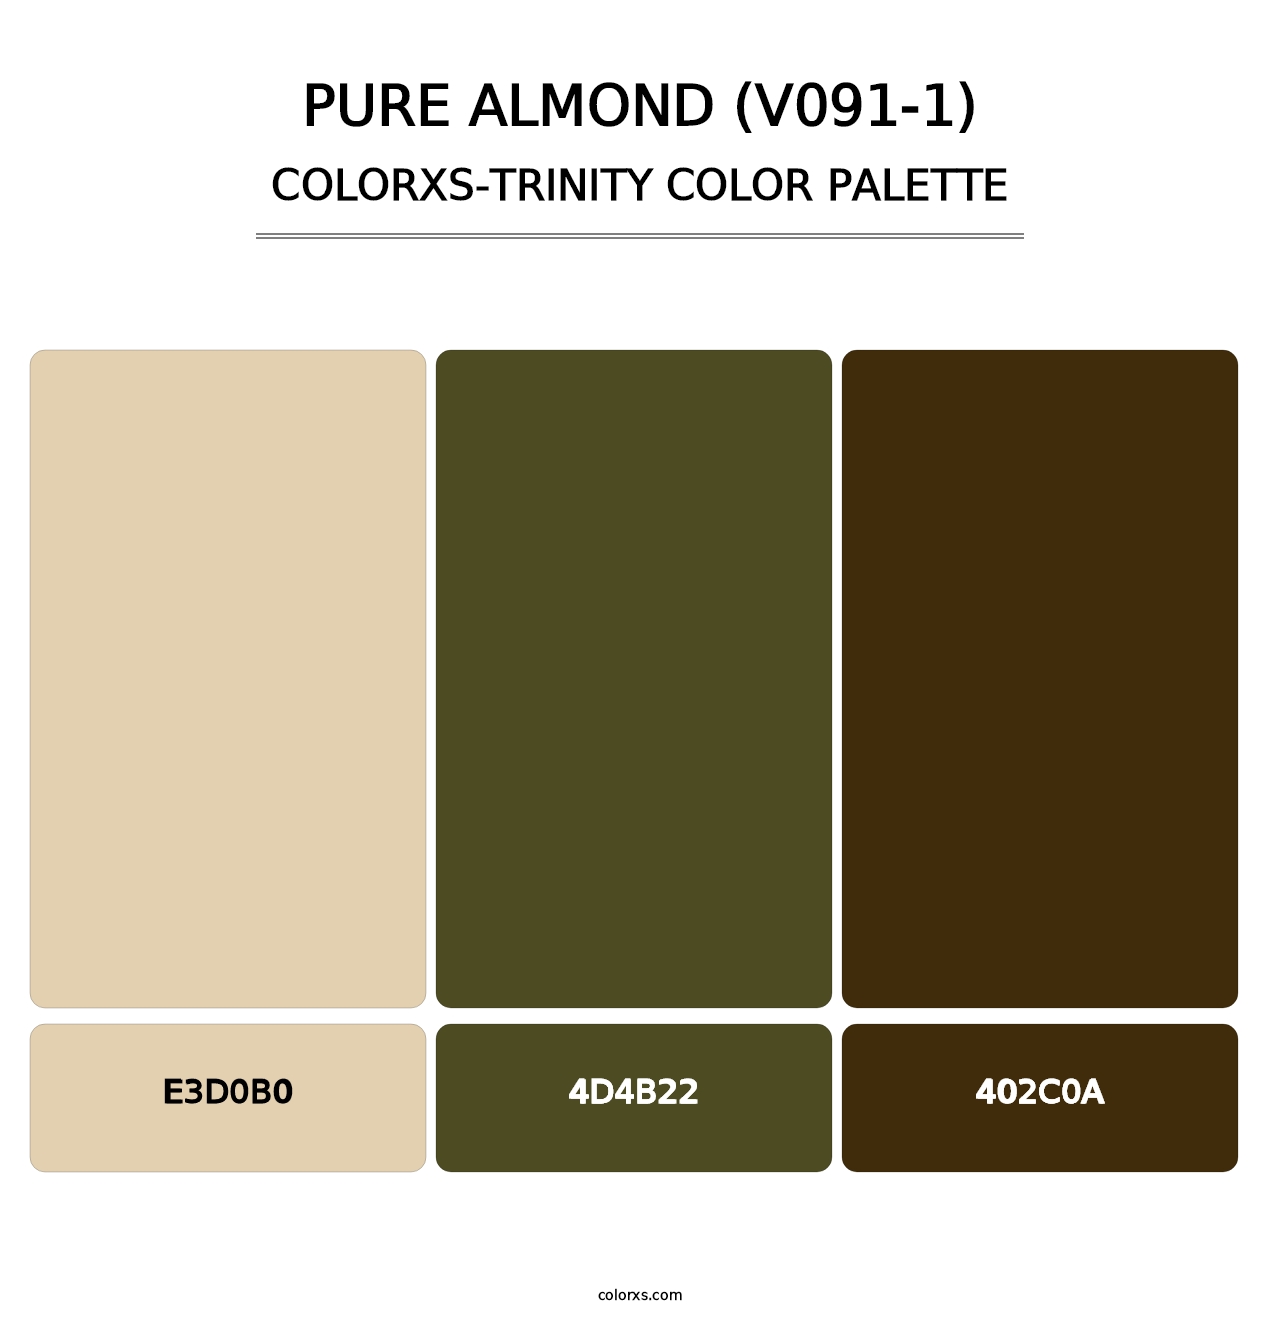 Pure Almond (V091-1) - Colorxs Trinity Palette